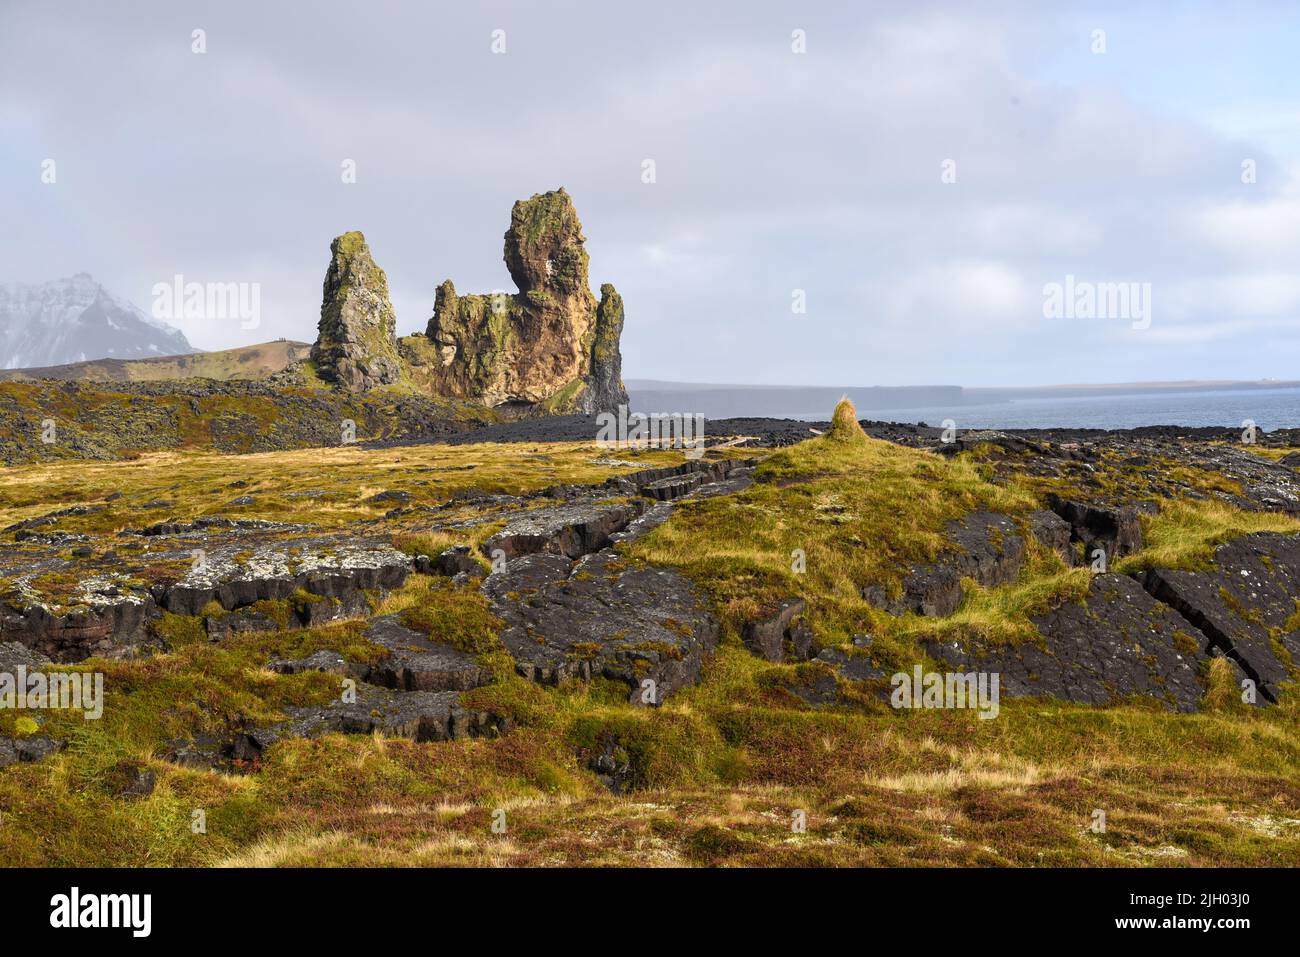 Les Lonndrangar sont une paire de pinacles de roche en Islande. Ce sont des bouchons volcaniques de basalte, qui ont été débayés de la roche environnante plus douce par l'ero Banque D'Images